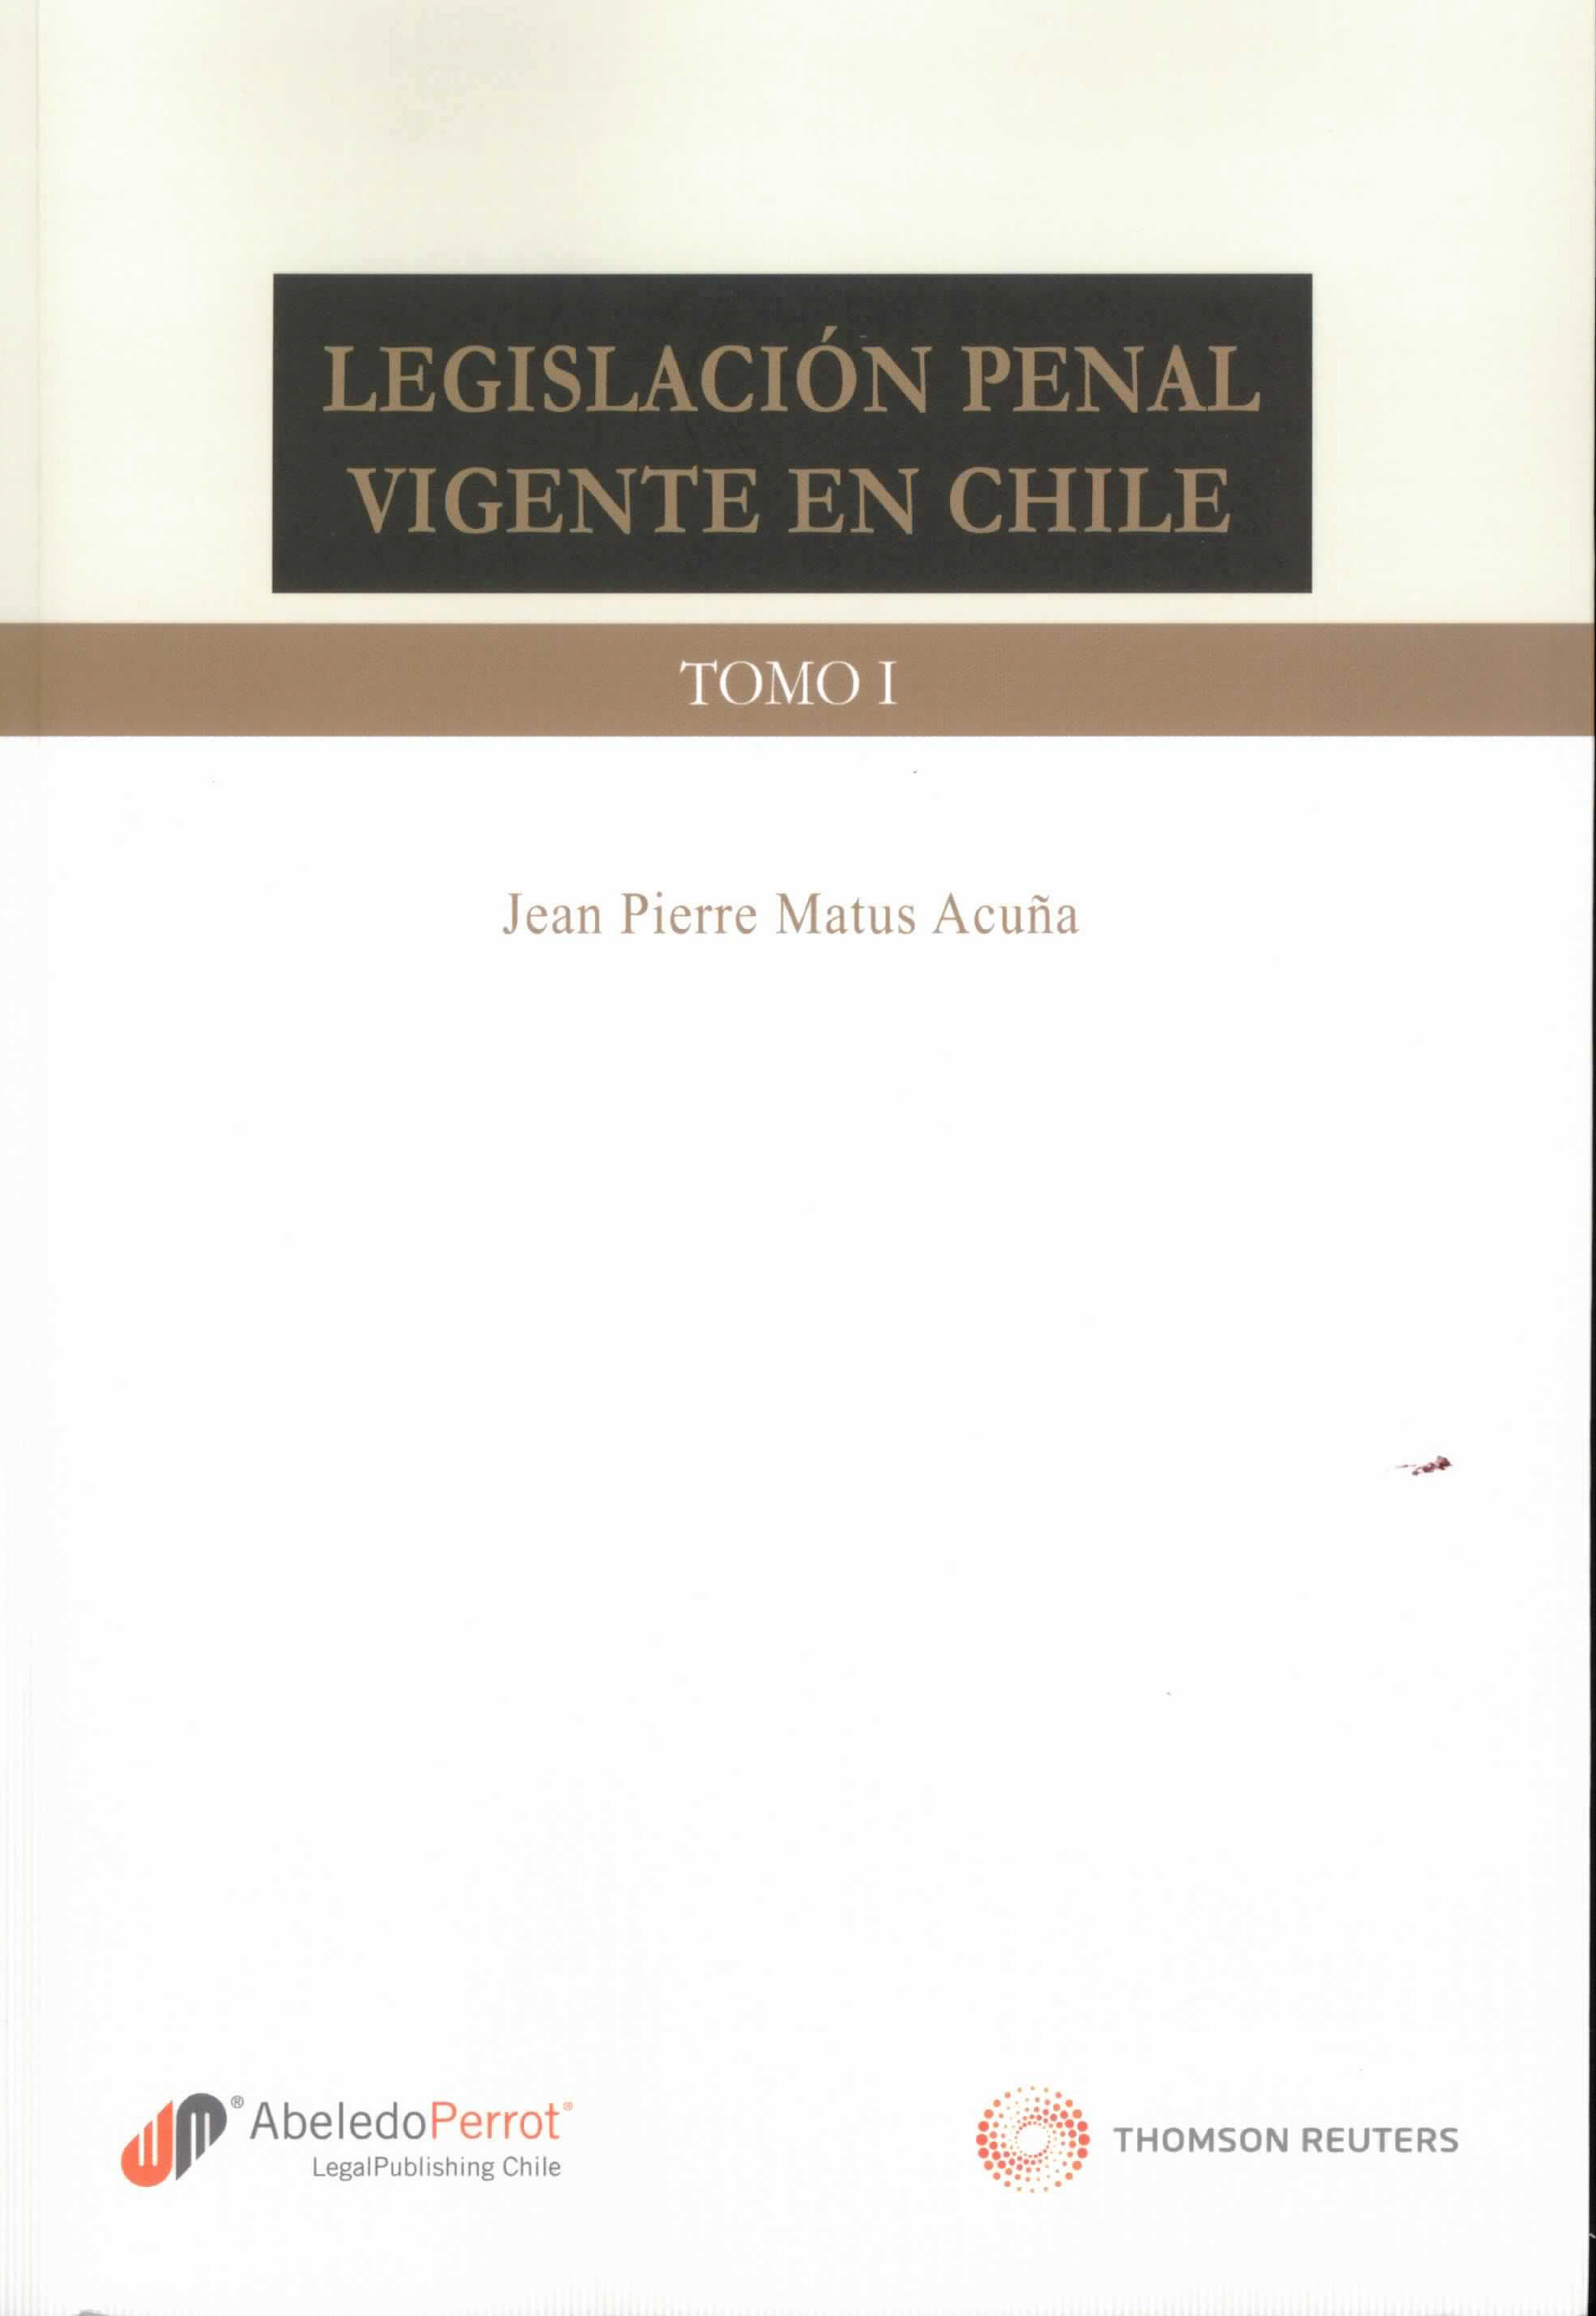 Legislación penal vigente en chile. Con una introducción sobe la evolución histórica de la legislación penal chilena